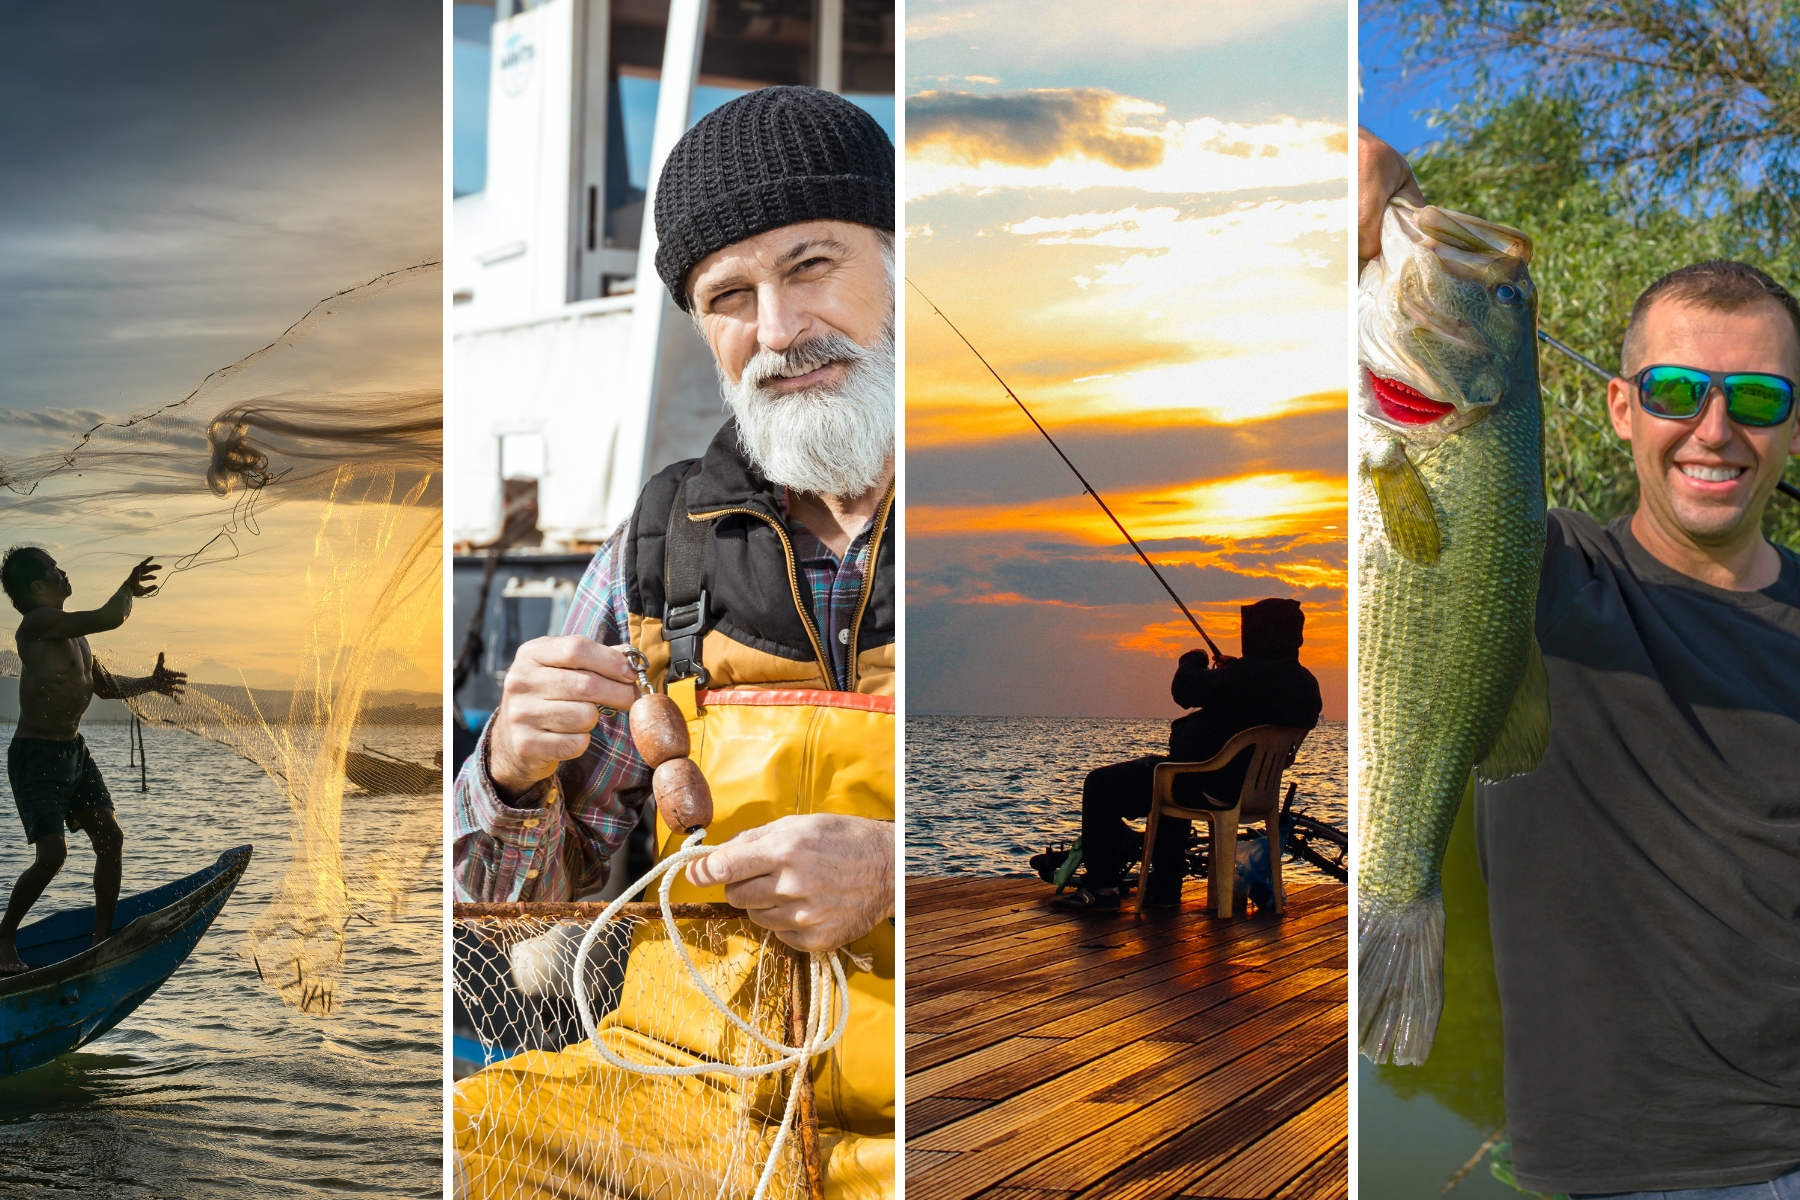 Conheça os 4 tipos de pescadores que pescam no Brasil: artesanal, profissional, amador e esportivo, e como eles atuam na atividade pesqueira brasileira.